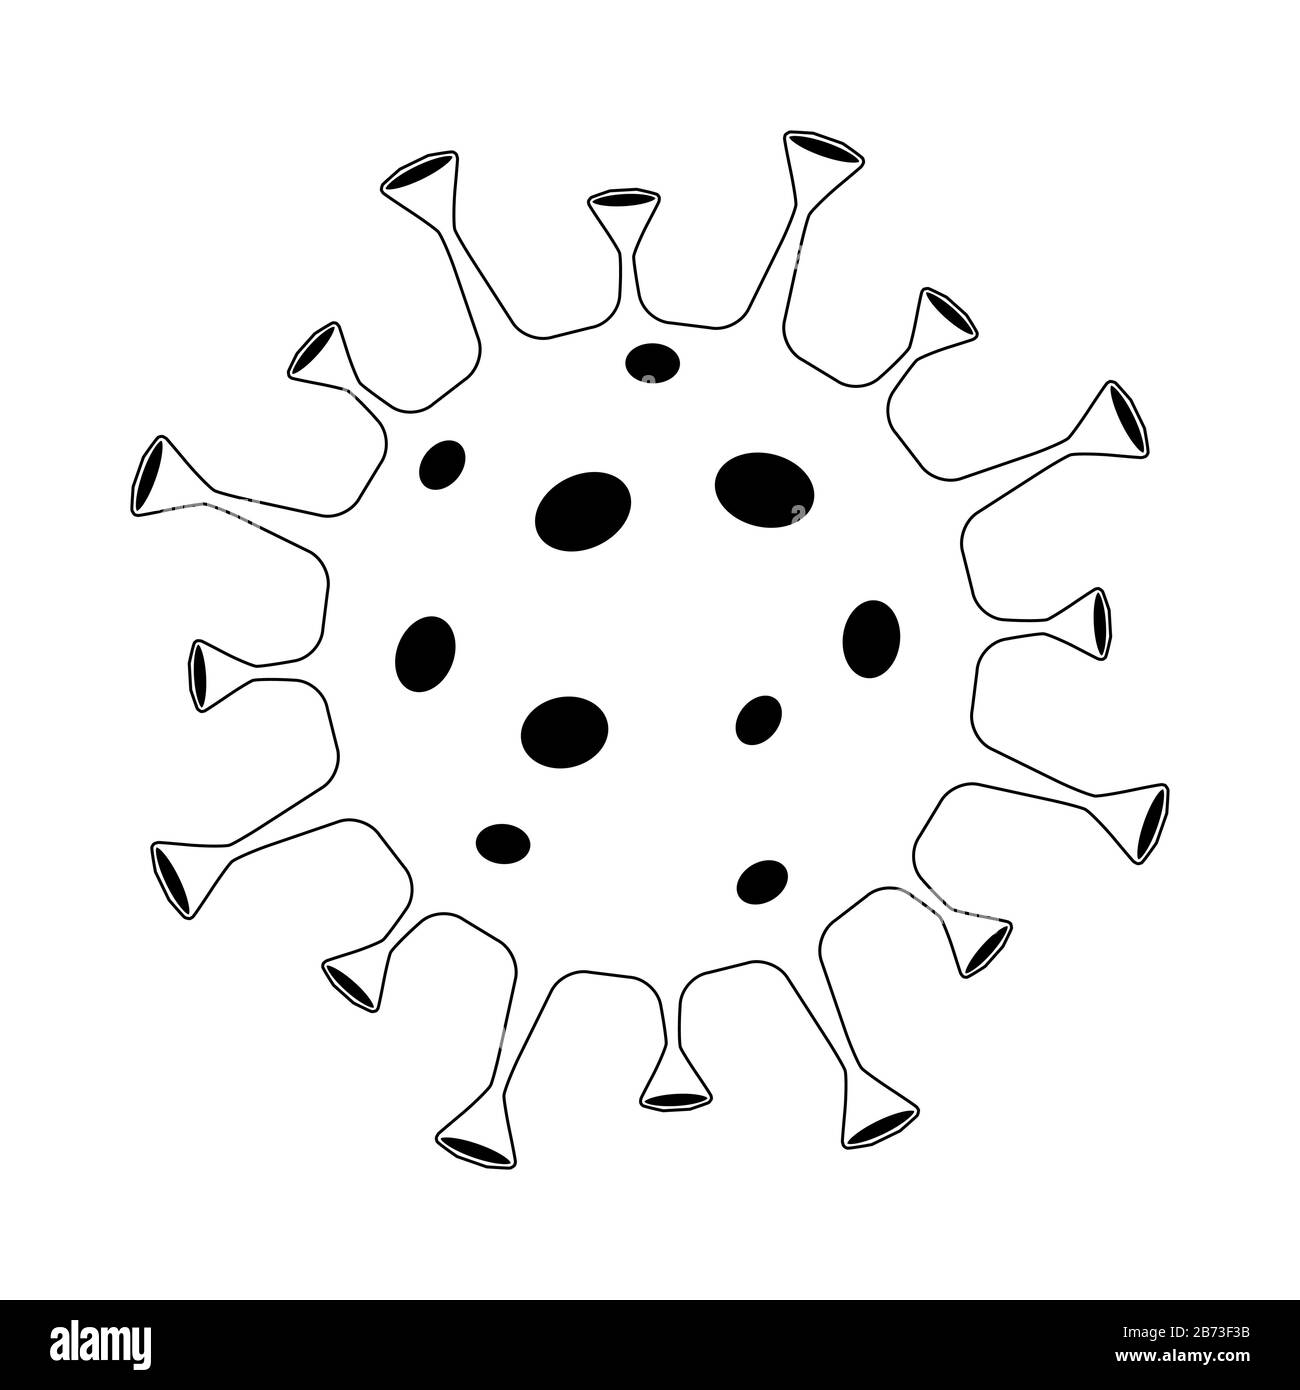 Conception des contours du virus Corona sur fond blanc. Coronavirus isolé dans le symbole de l'icône Wuhan. Infection respiratoire par un agent pathogène chinois (épidémie de grippe asiatique). Illustration de Vecteur